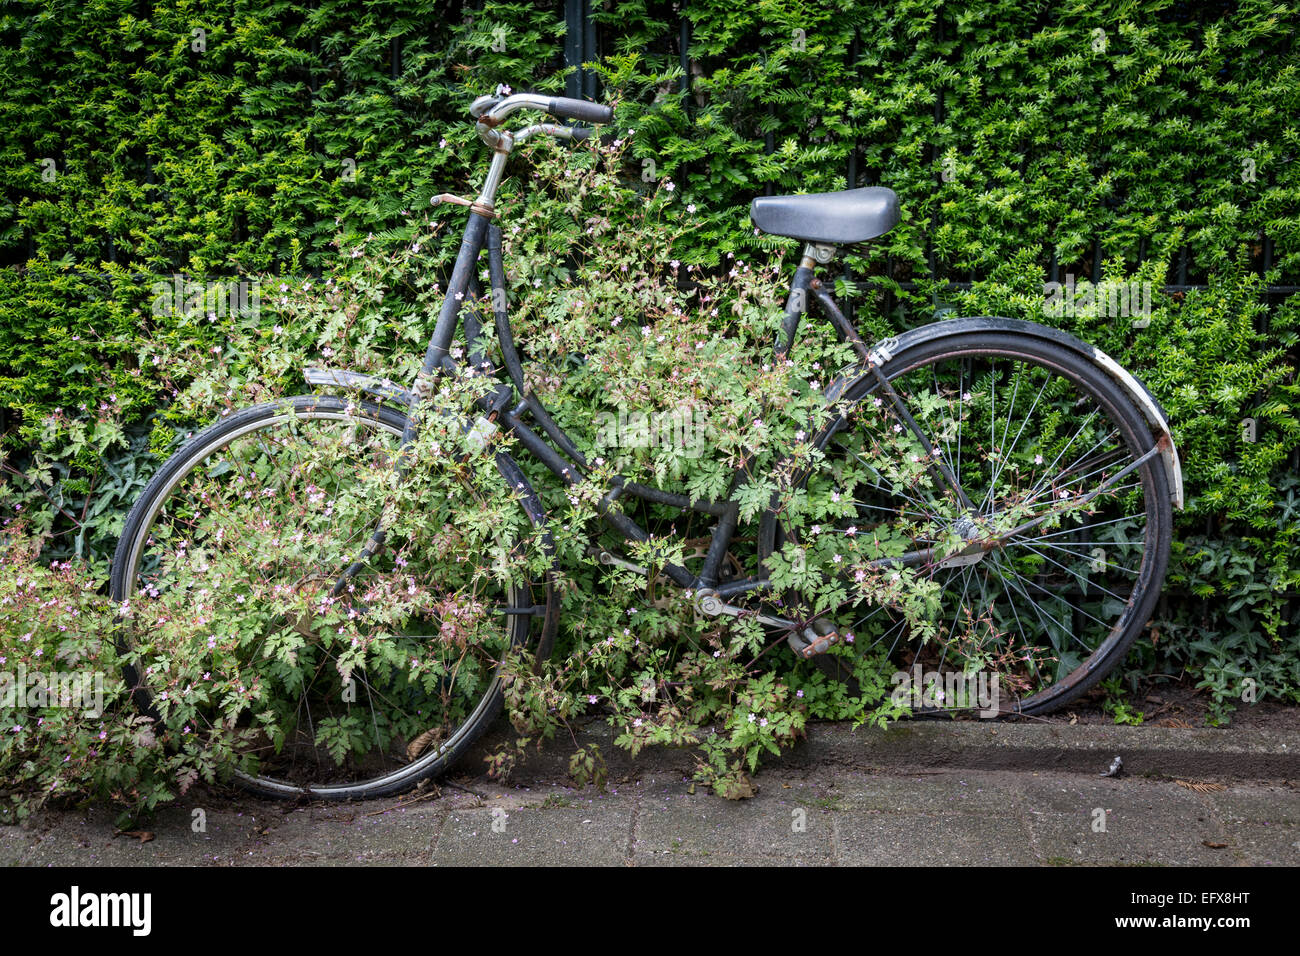 Reben wachsen in und um eine längst vergessene Fahrrad durch seinen Besitzer an einen Zaun gesperrt. Stockfoto